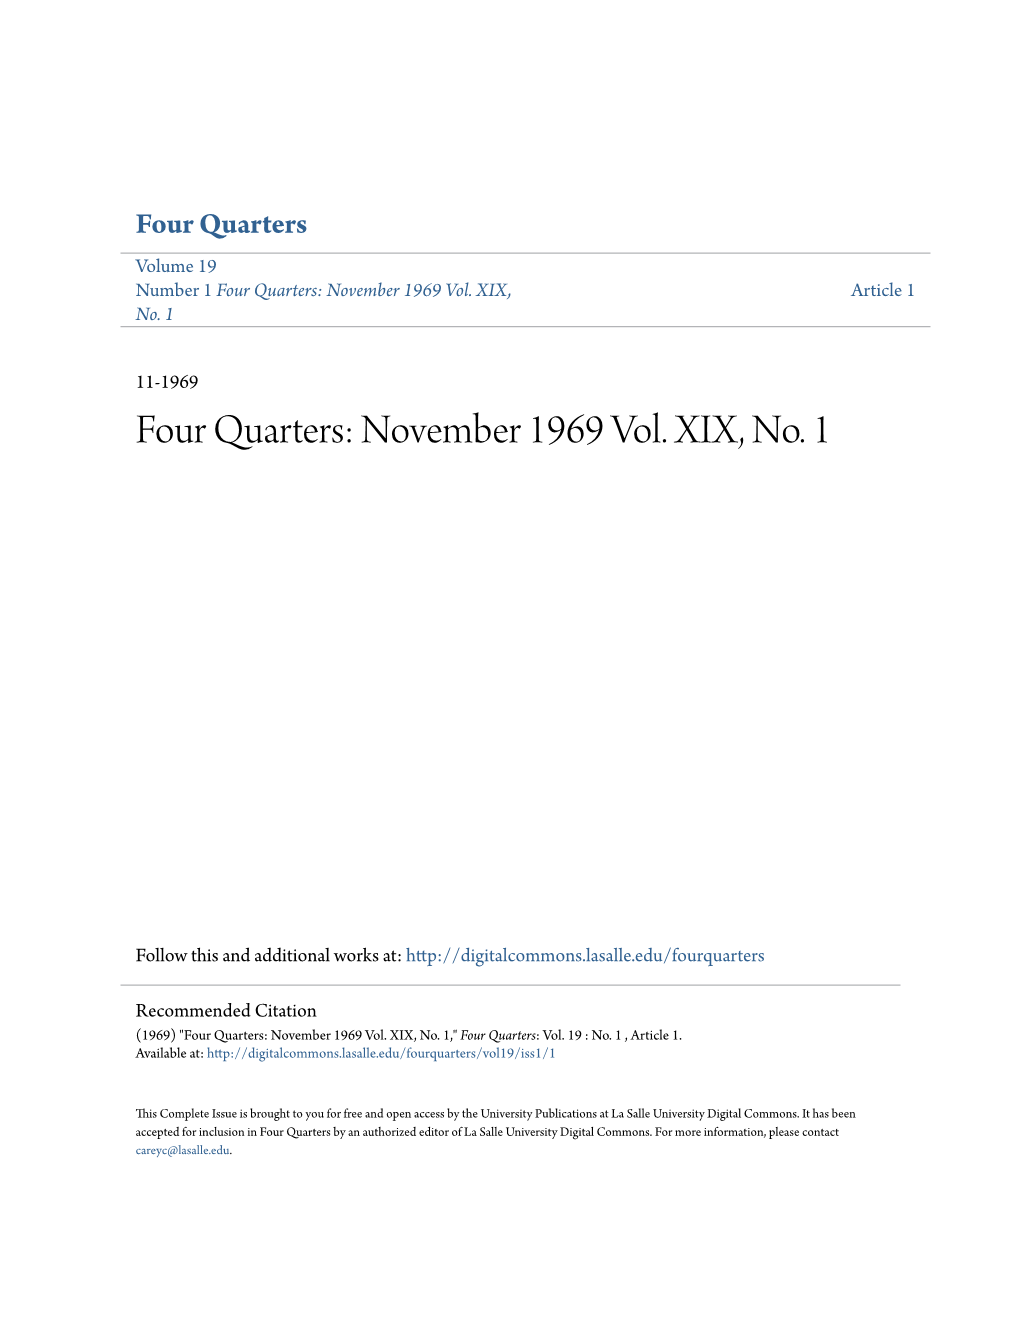 Four Quarters Volume 19 Number 1 Four Quarters: November 1969 Vol